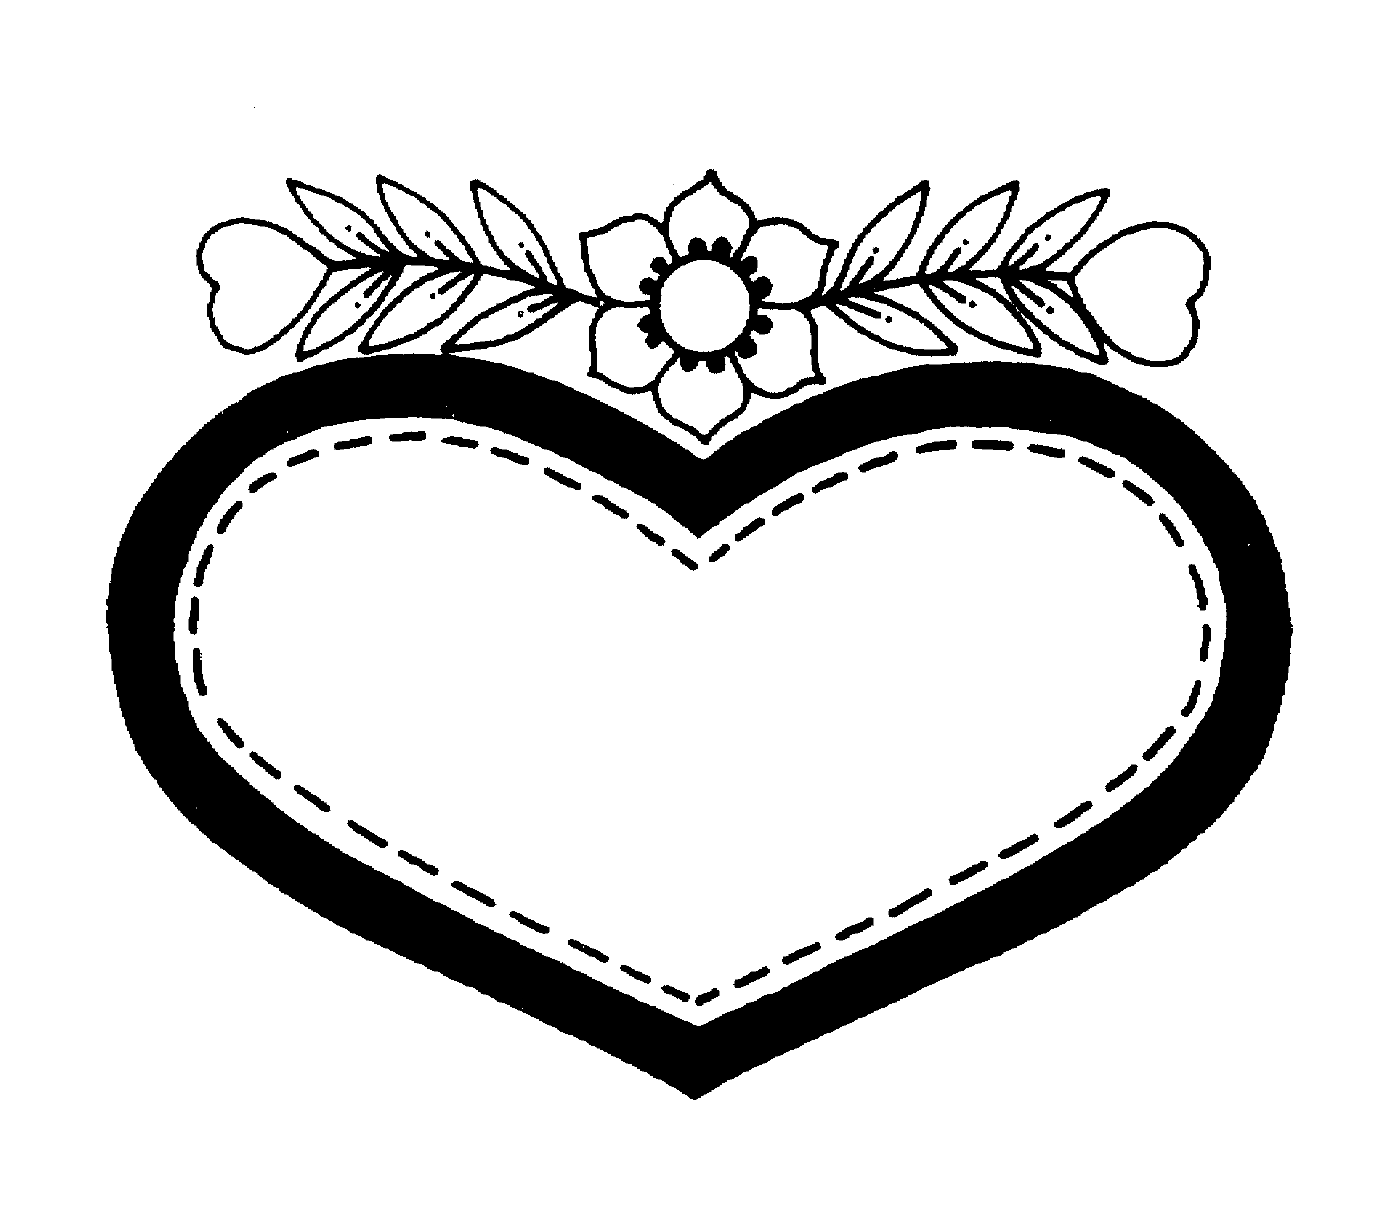  Coração do Dia dos Namorados com uma flor delicada 